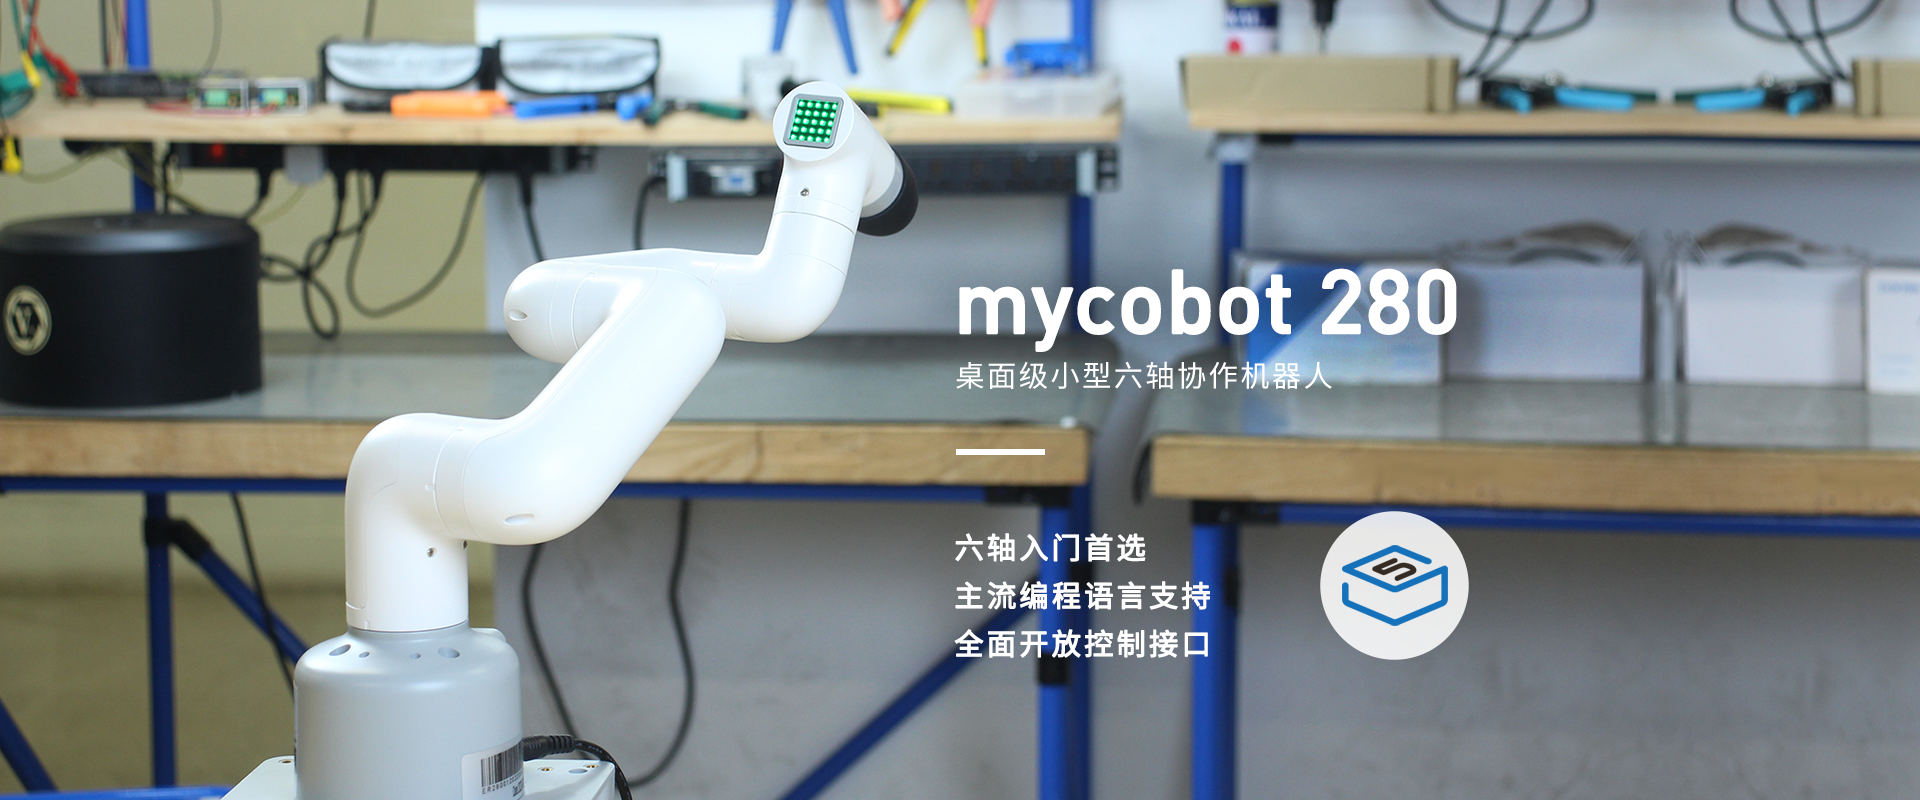 mycobot 280 cn new